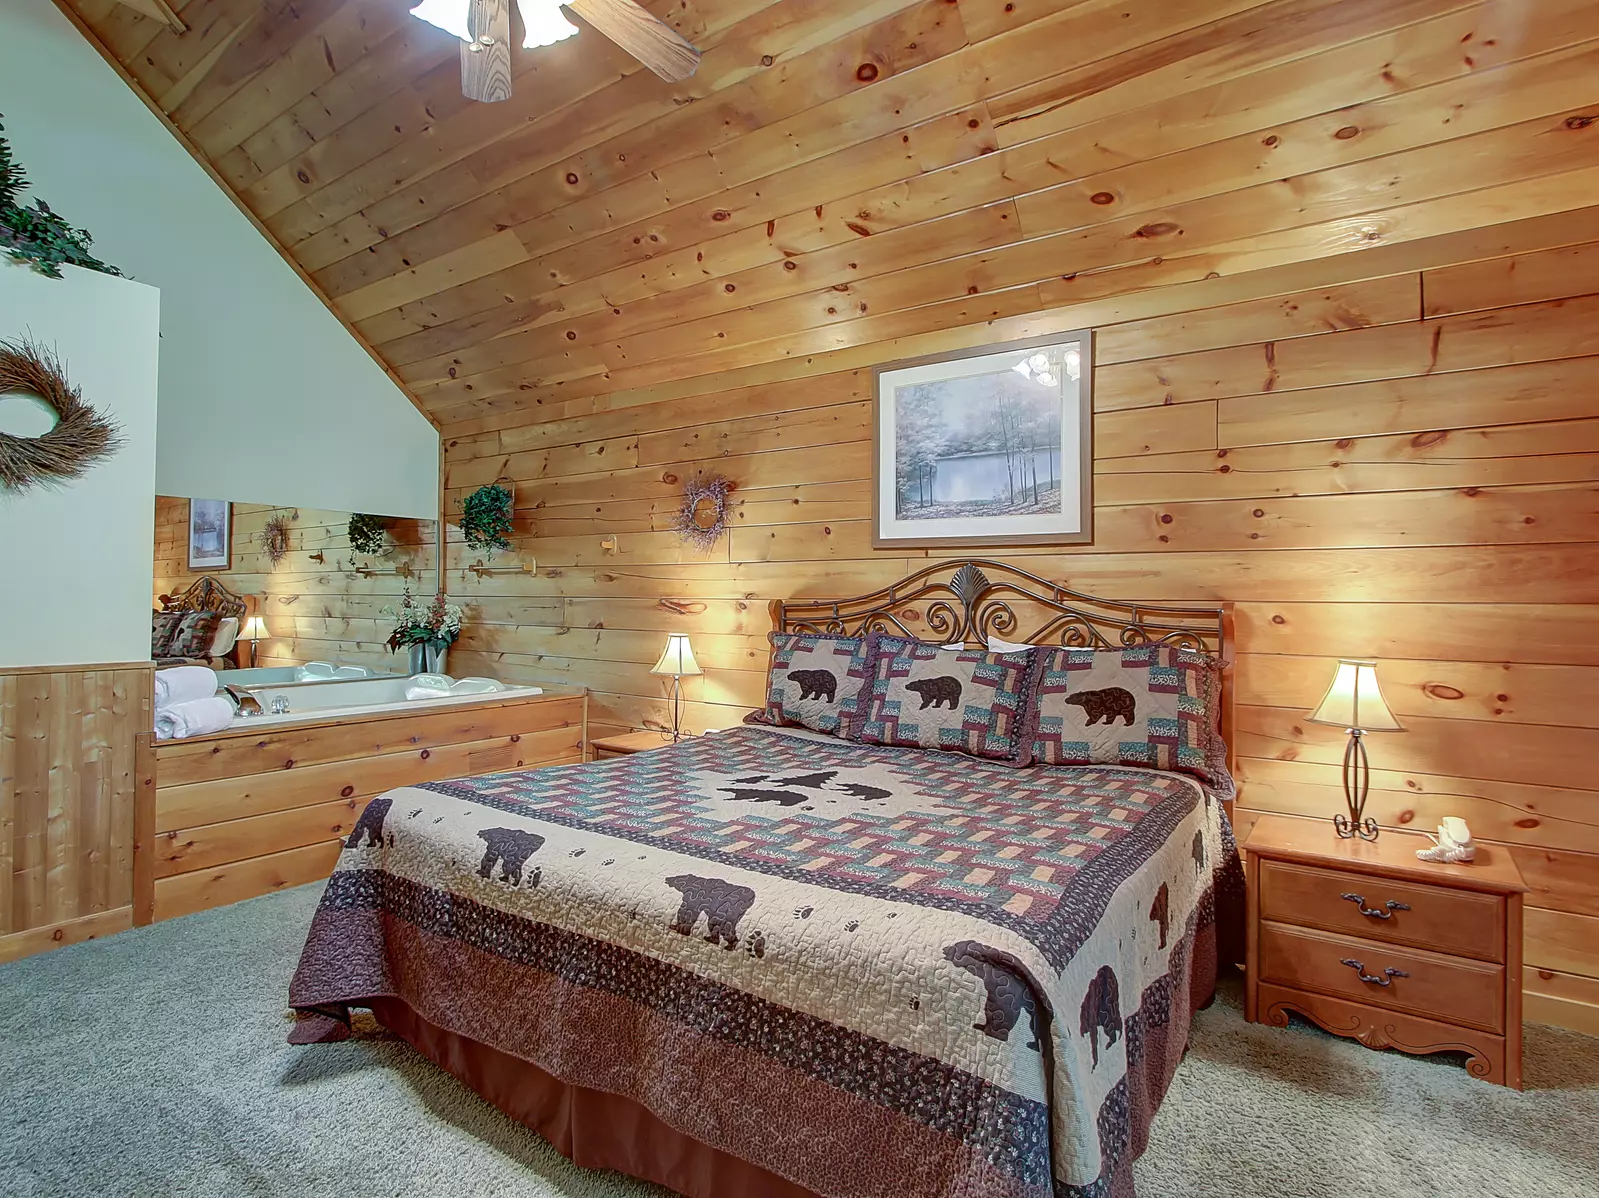 2 Bedroom Cabin Rental in Sevierville: Rustic Raccoon